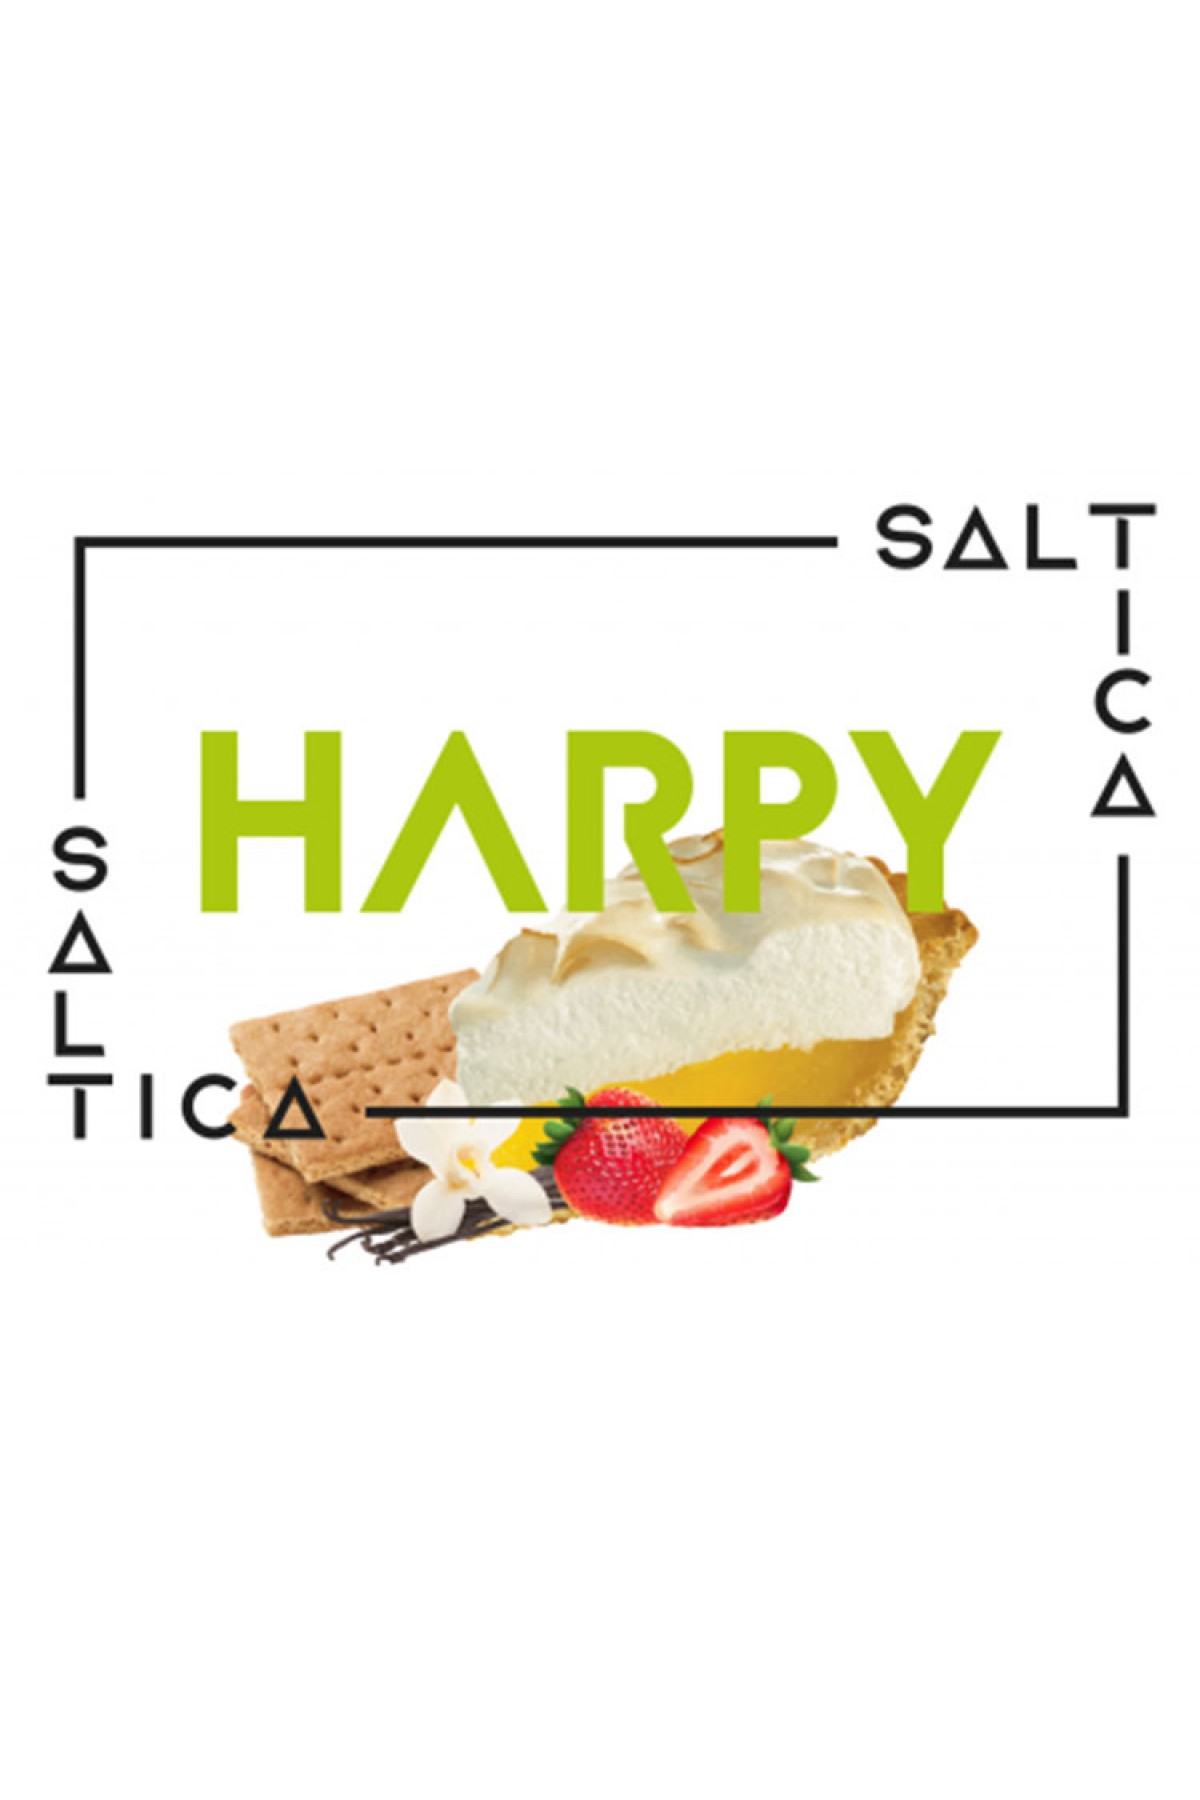 Saltica - Harpy (Cheesecake, Kraker, Çilek, Vanilya) (30ML)